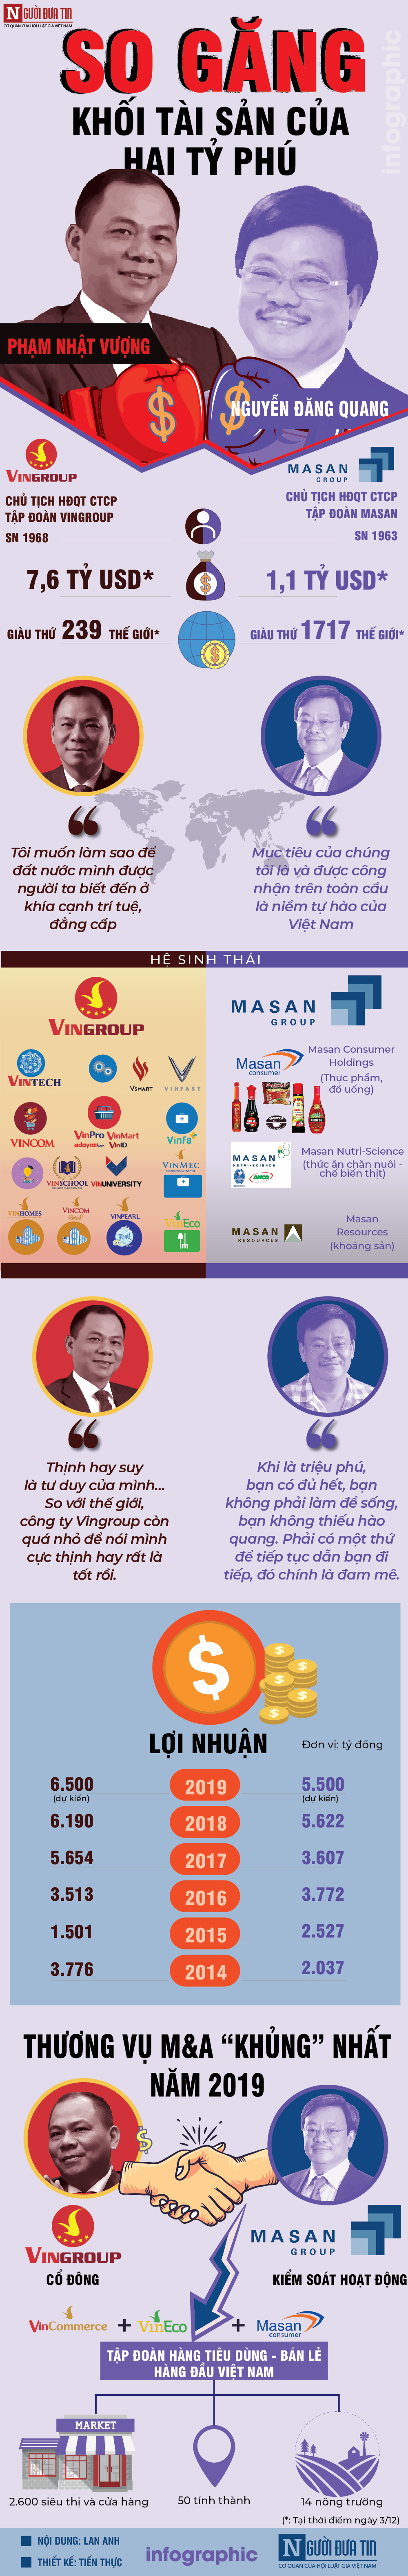 Tài chính - Ngân hàng - [Info] So găng khối tài sản của hai tỷ phú Vingroup Phạm Nhật Vượng và tỷ phú Masan Nguyễn Đăng Quang